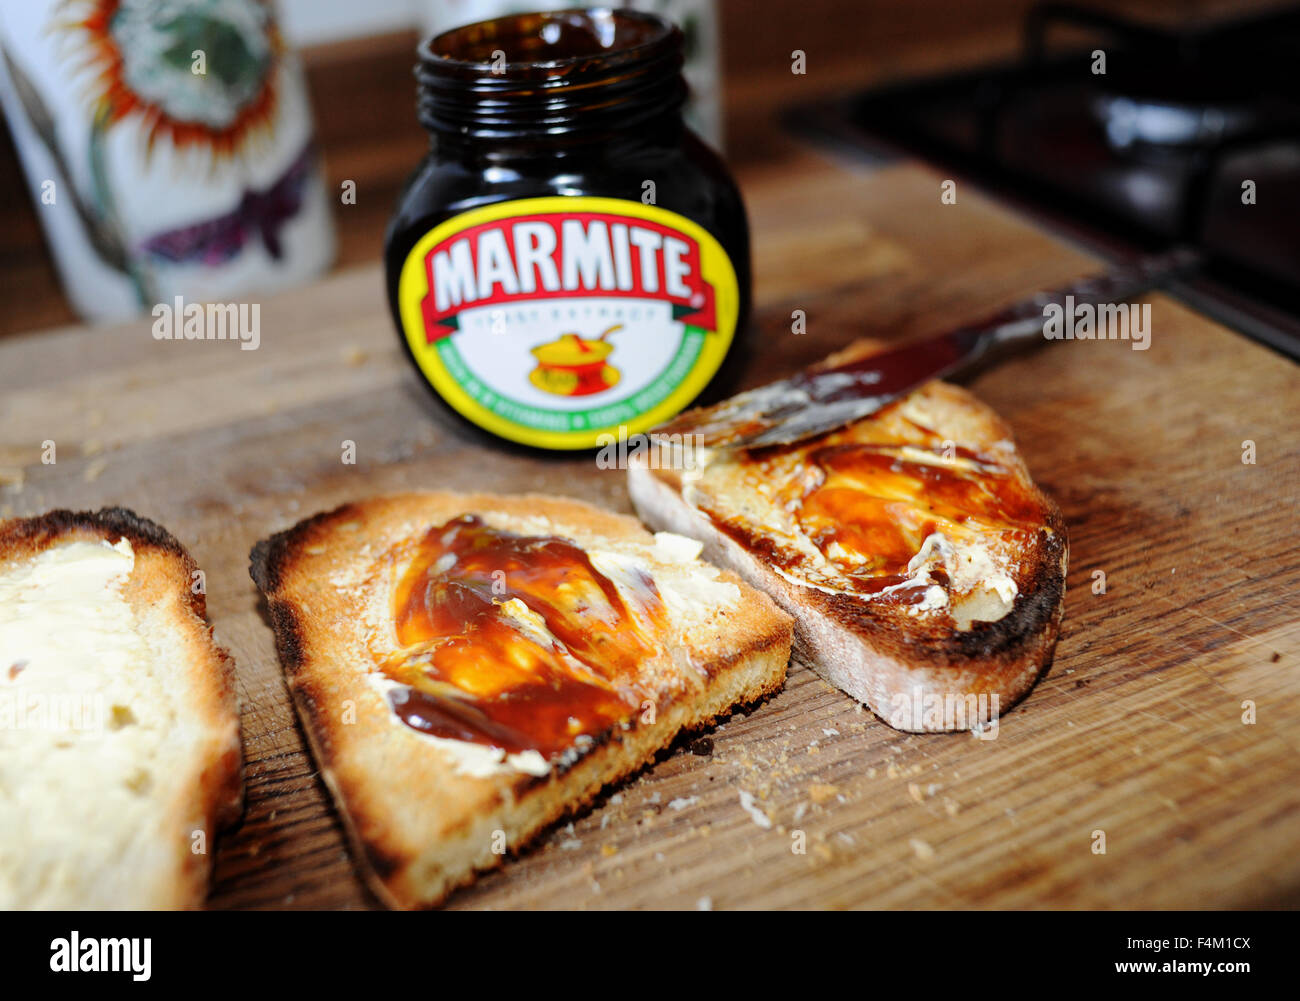 Marmite su toast lo amate o lo odiate famoso British diffusione fatta di estratto di lievito Foto Stock